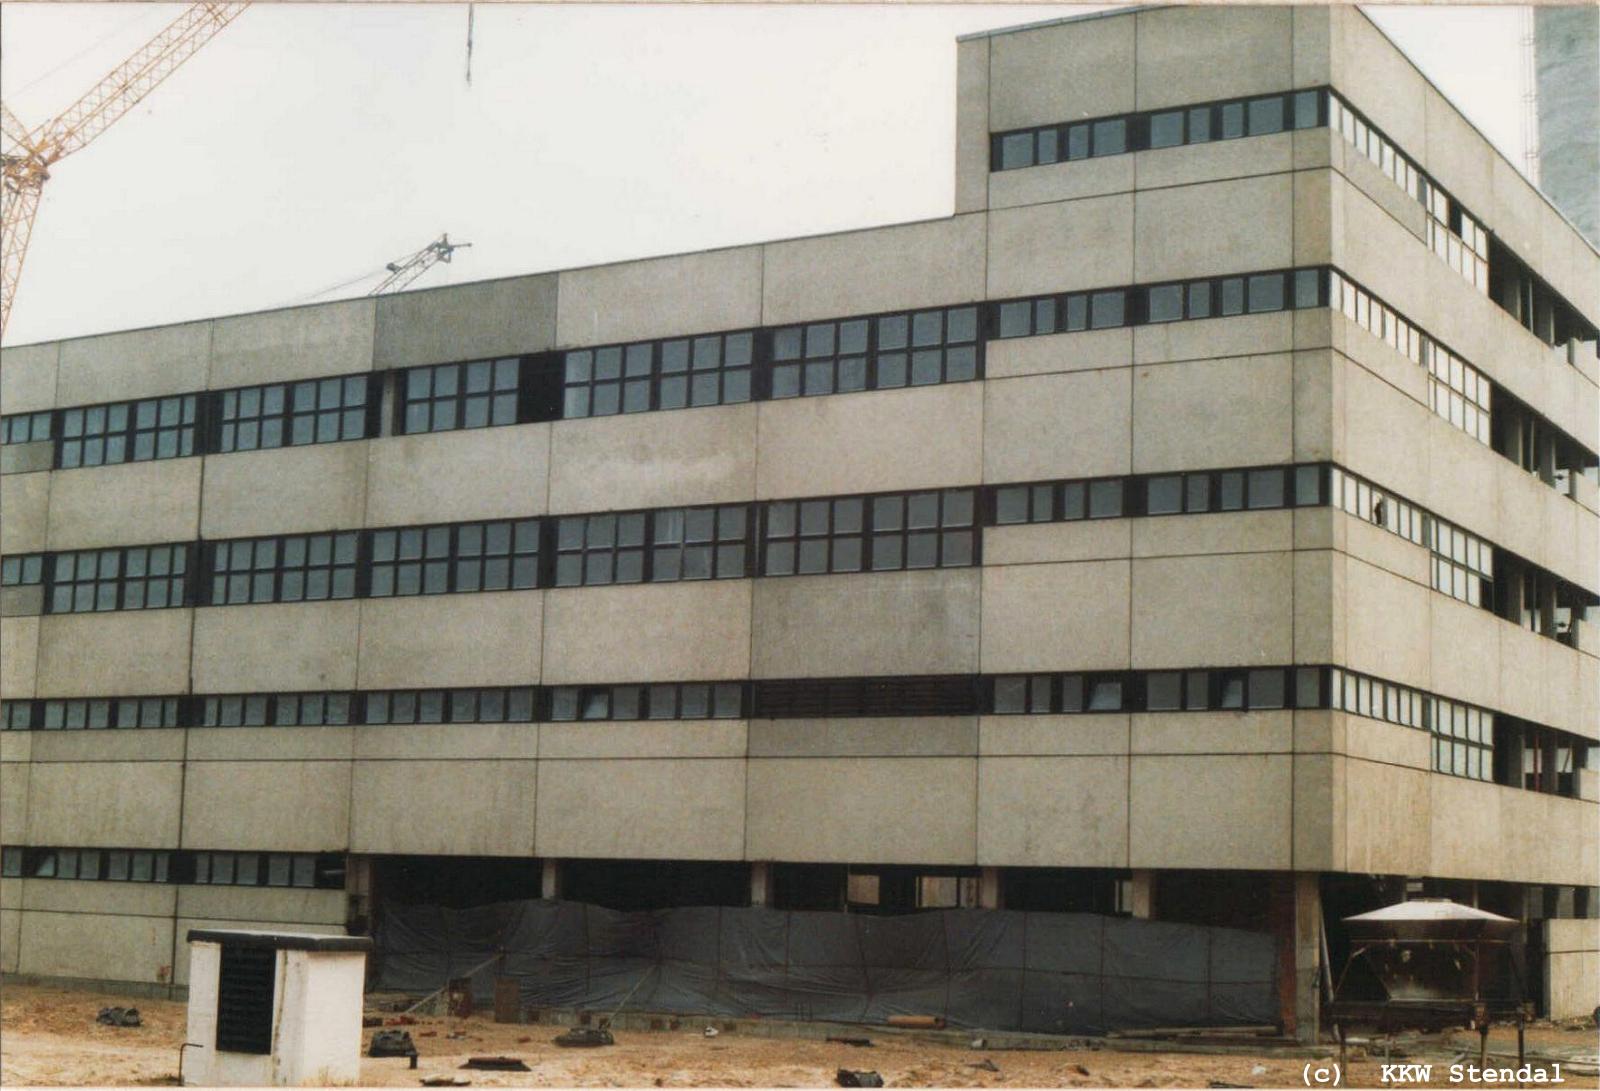  KKW Stendal, Baustelle 1990, SLG Sanitär- und Labor-Gebäude,
 Südwestbereich 